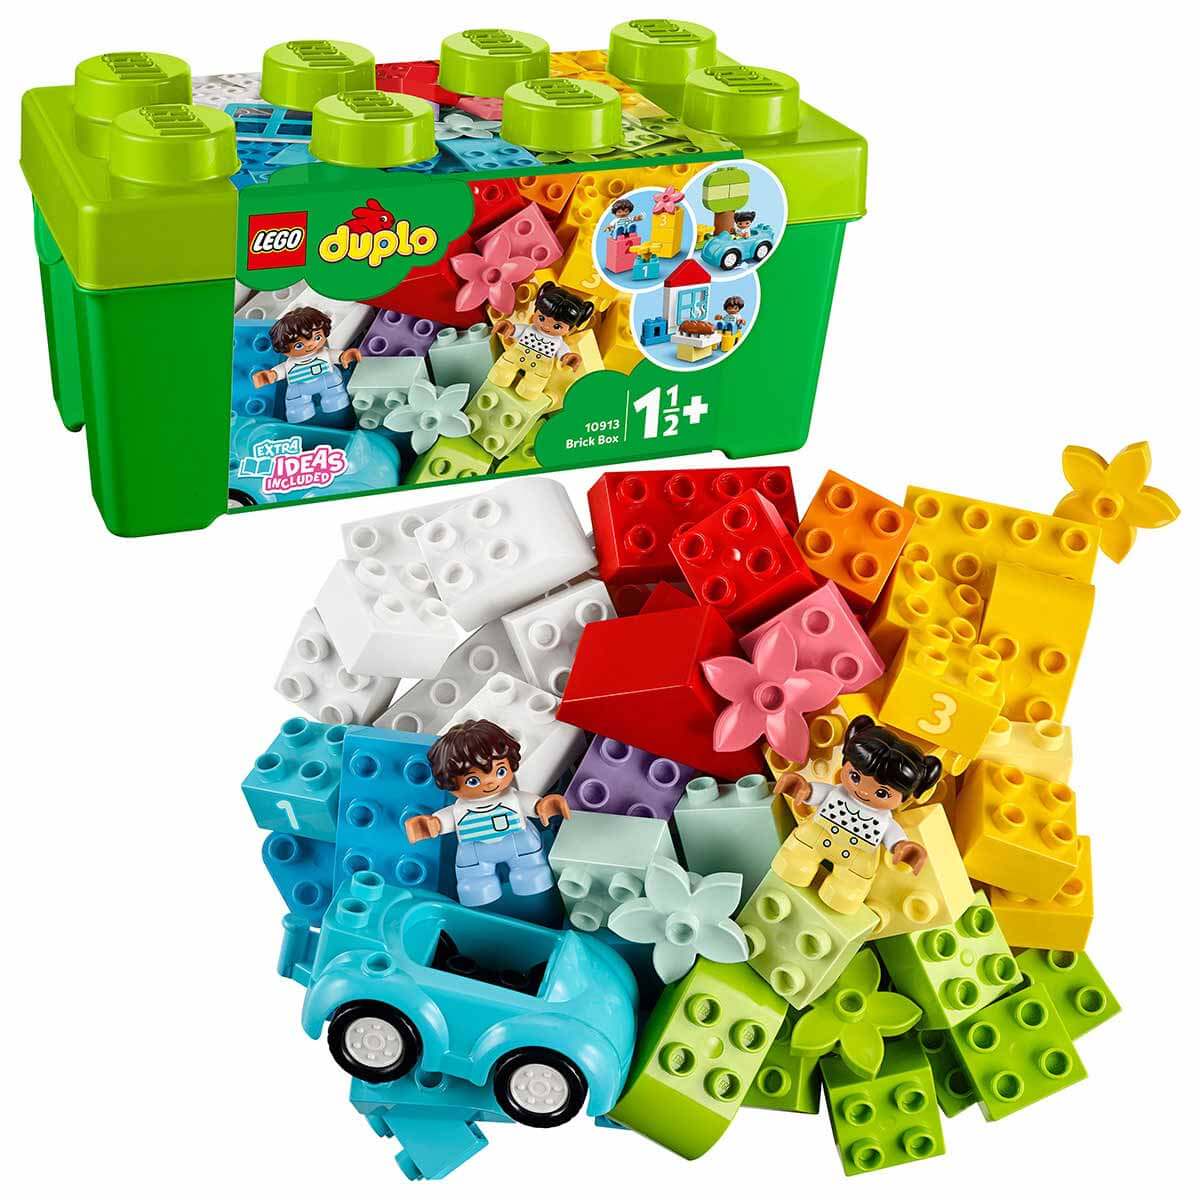 LEGO® DUPLO® Classic Yapım Parçası Kutusu 10913 1½+ Eğitici Oyuncak Yapım Seti - 65 Parça